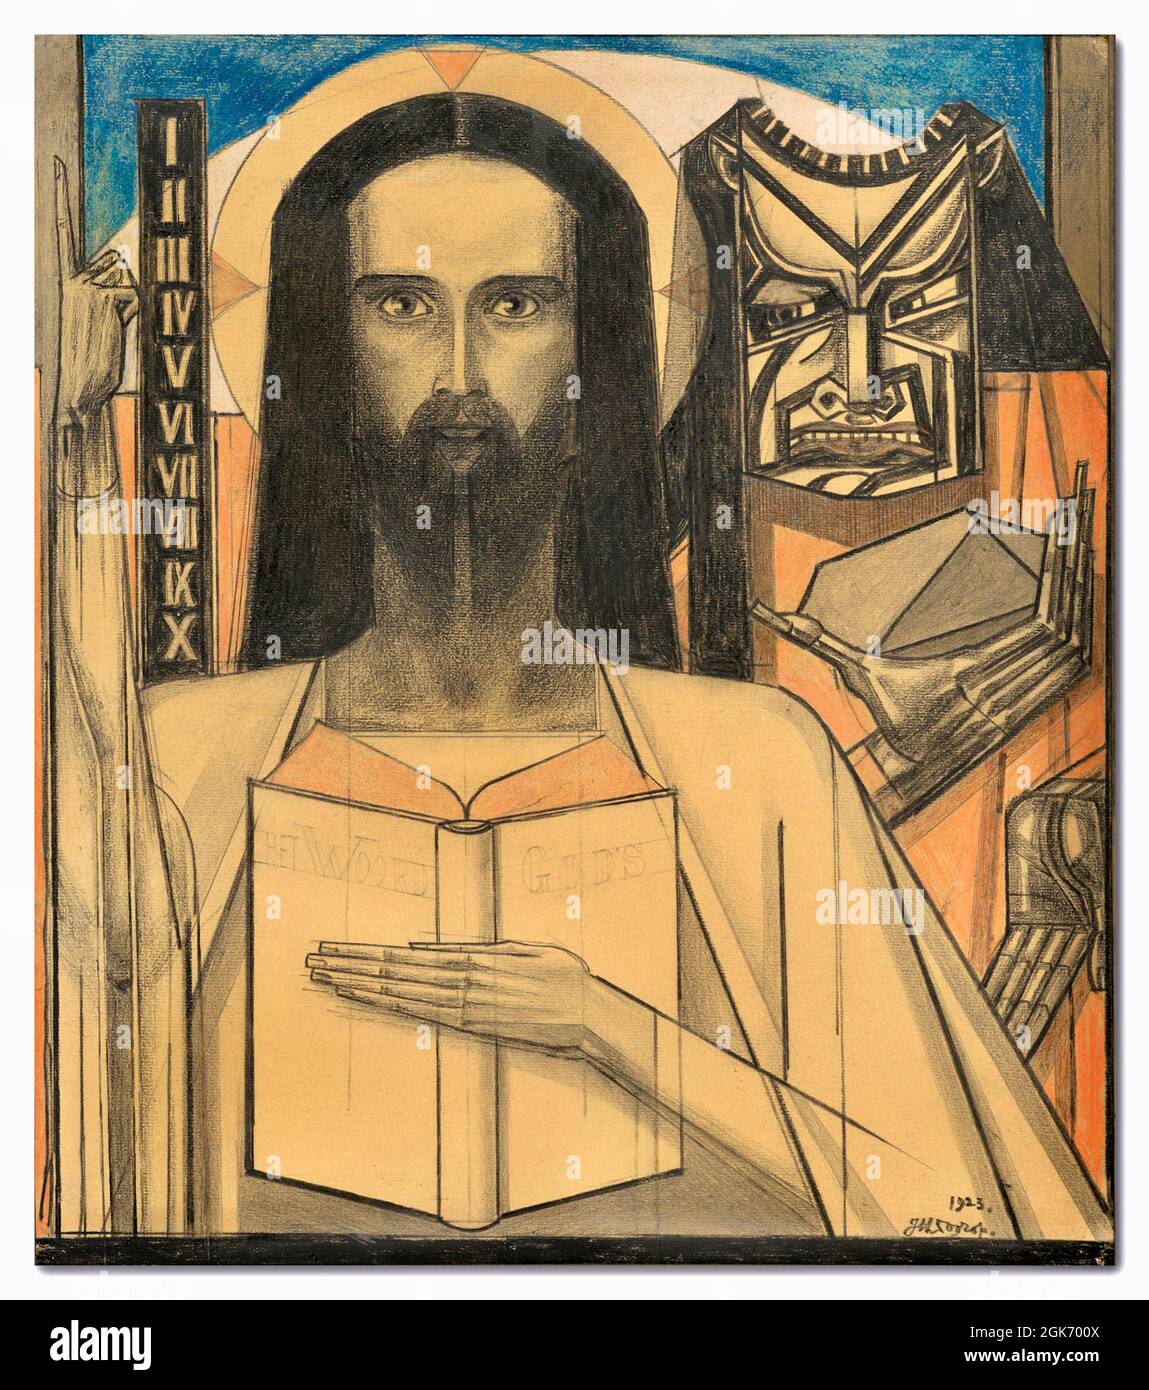 Jan Toorop Artwork - Studie für ‘Christus in der Wüste - 1923 - Jesus Christus wird in der Wüste von Satan versucht. Stockfoto